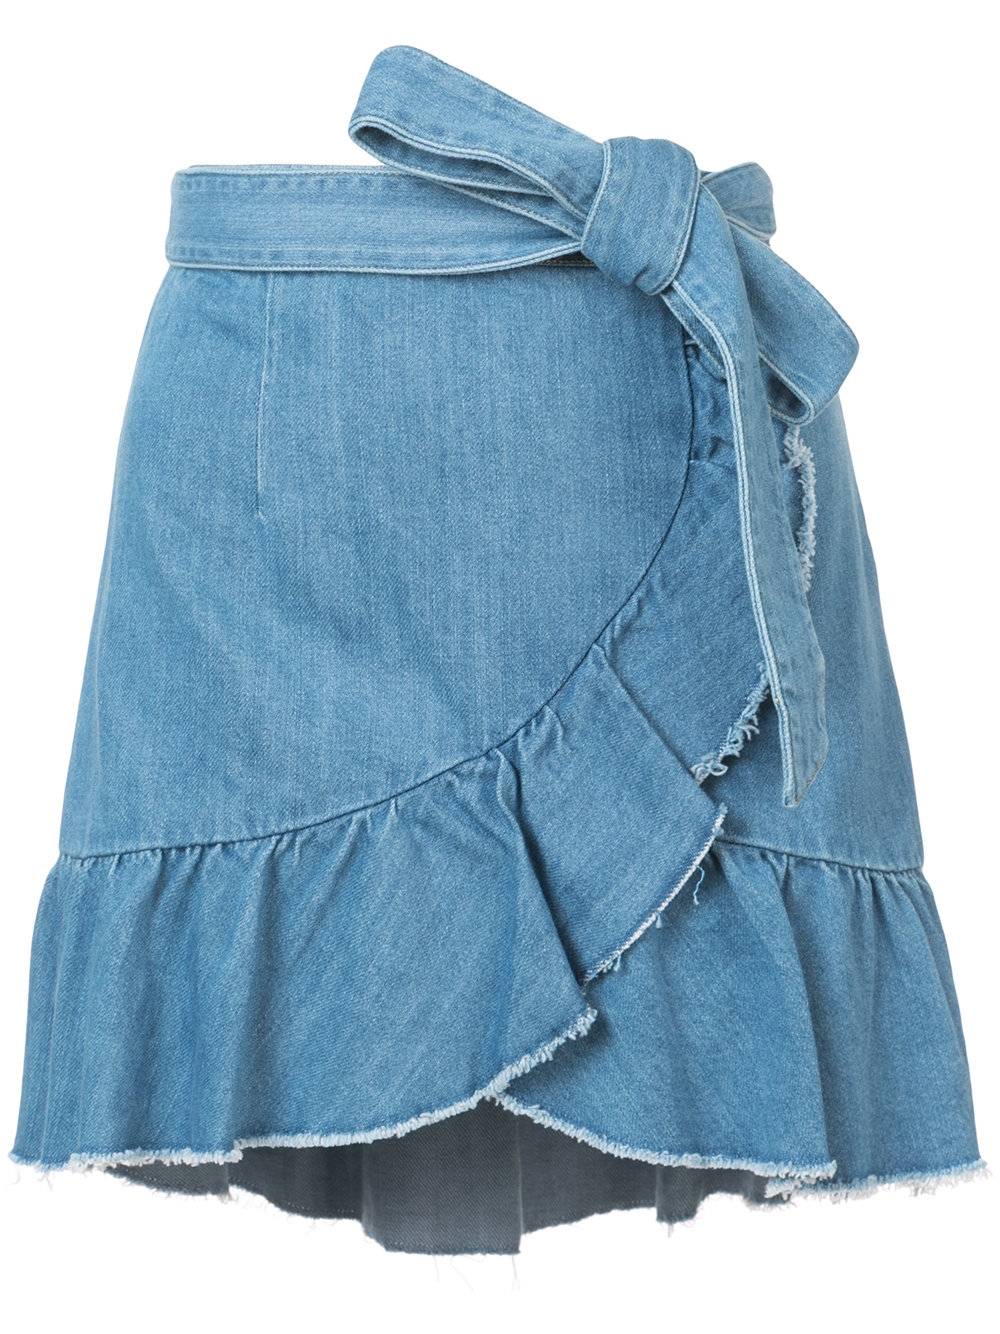 Джинсовые юбки: какую выбрать и с чем носить?